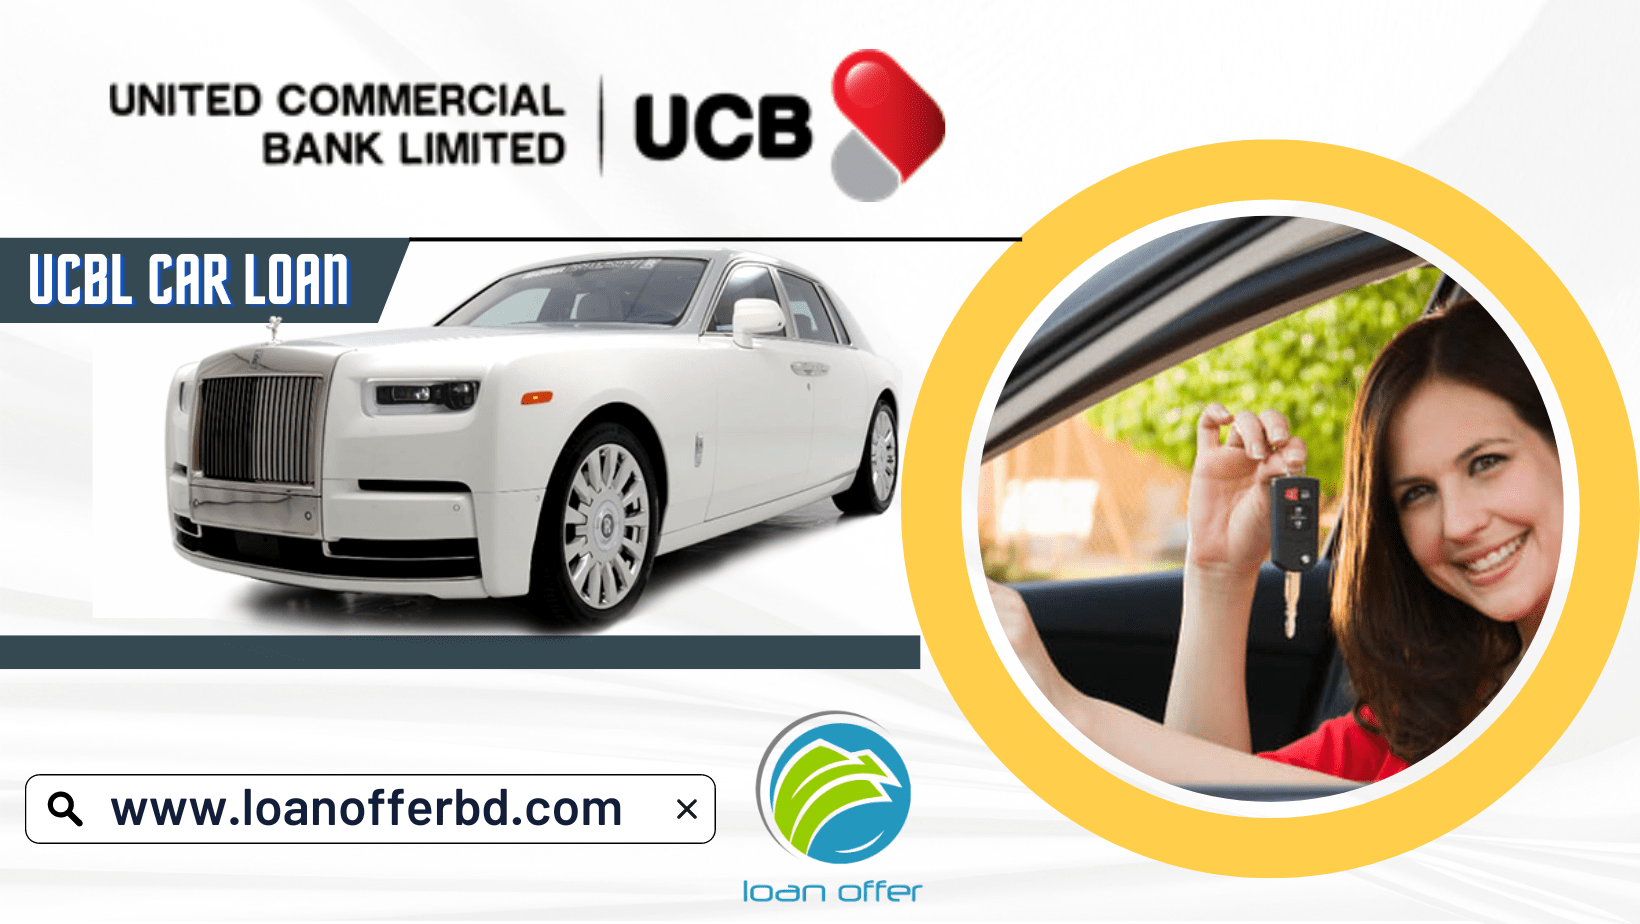 ucbl-car-loan-loanofferbd